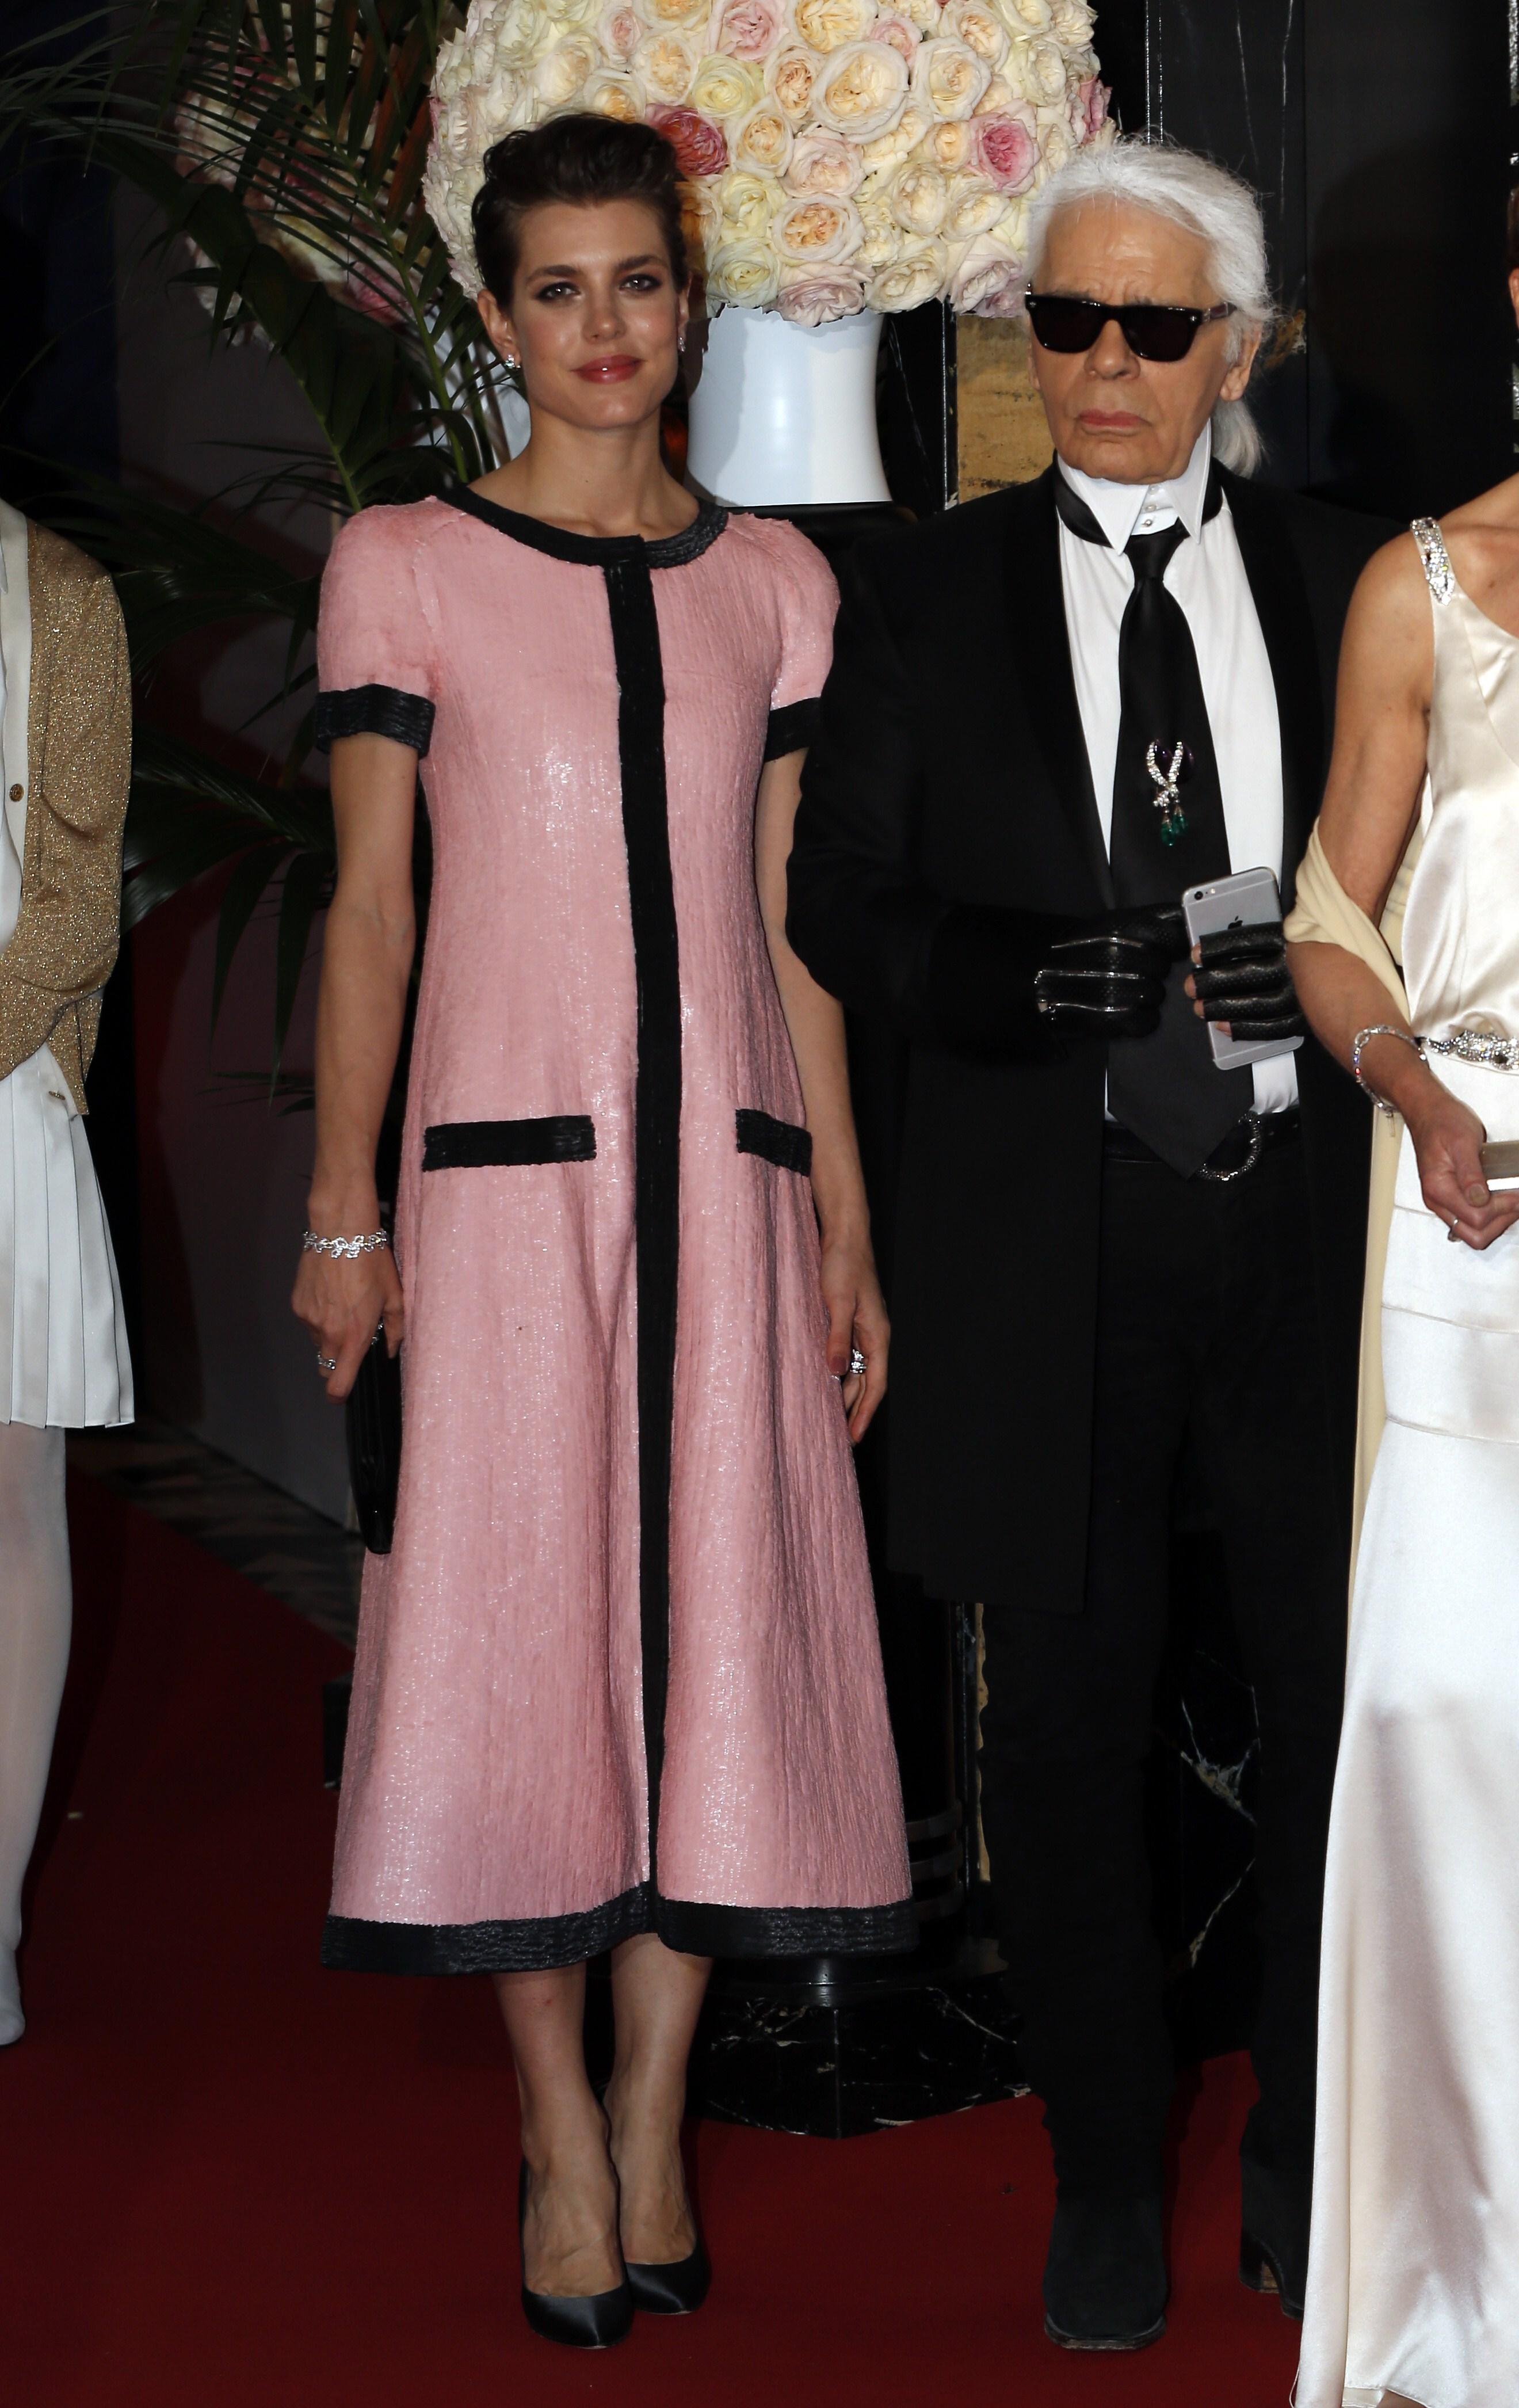 Charlotte og daværende sjefsdesigner hos Chanel, Karl Lagerfeld ankommer det årlige rose-ballet i 2015. Charlotte i Chanel.